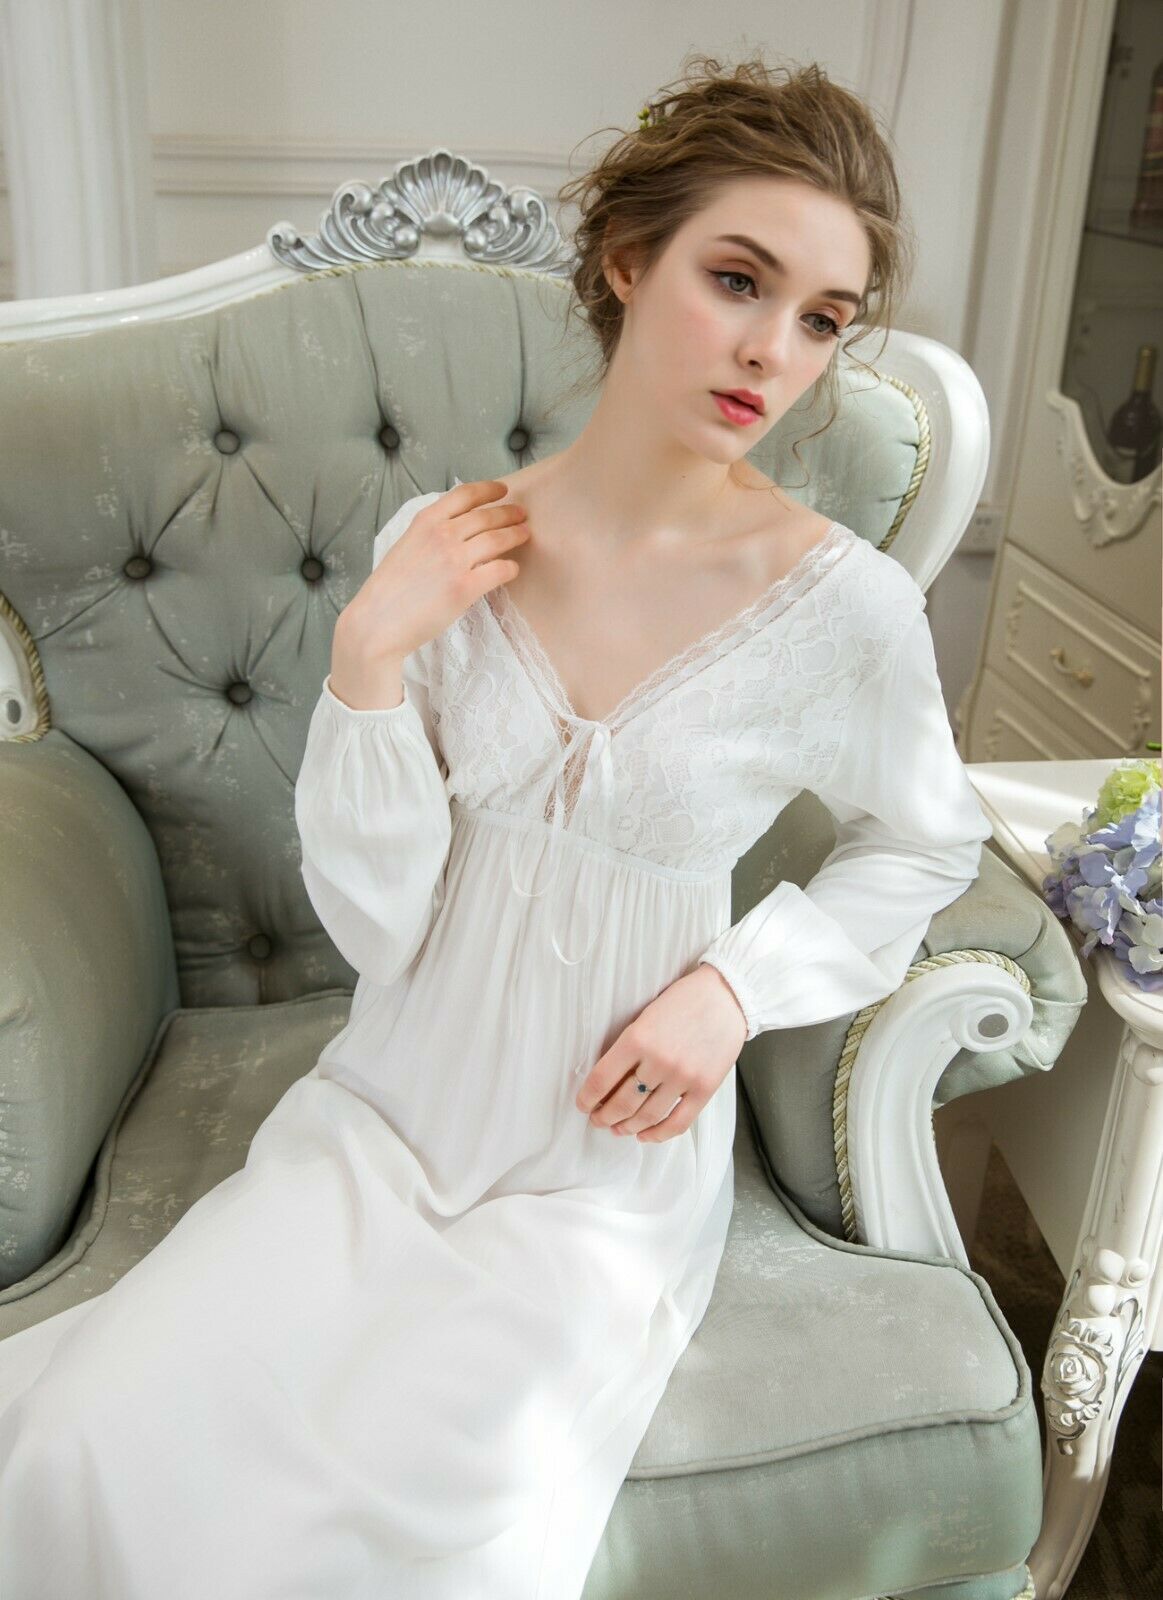 Unbranded - Women vintage lace victorian nightgown lingerie dress sleepwear pajama nightwear